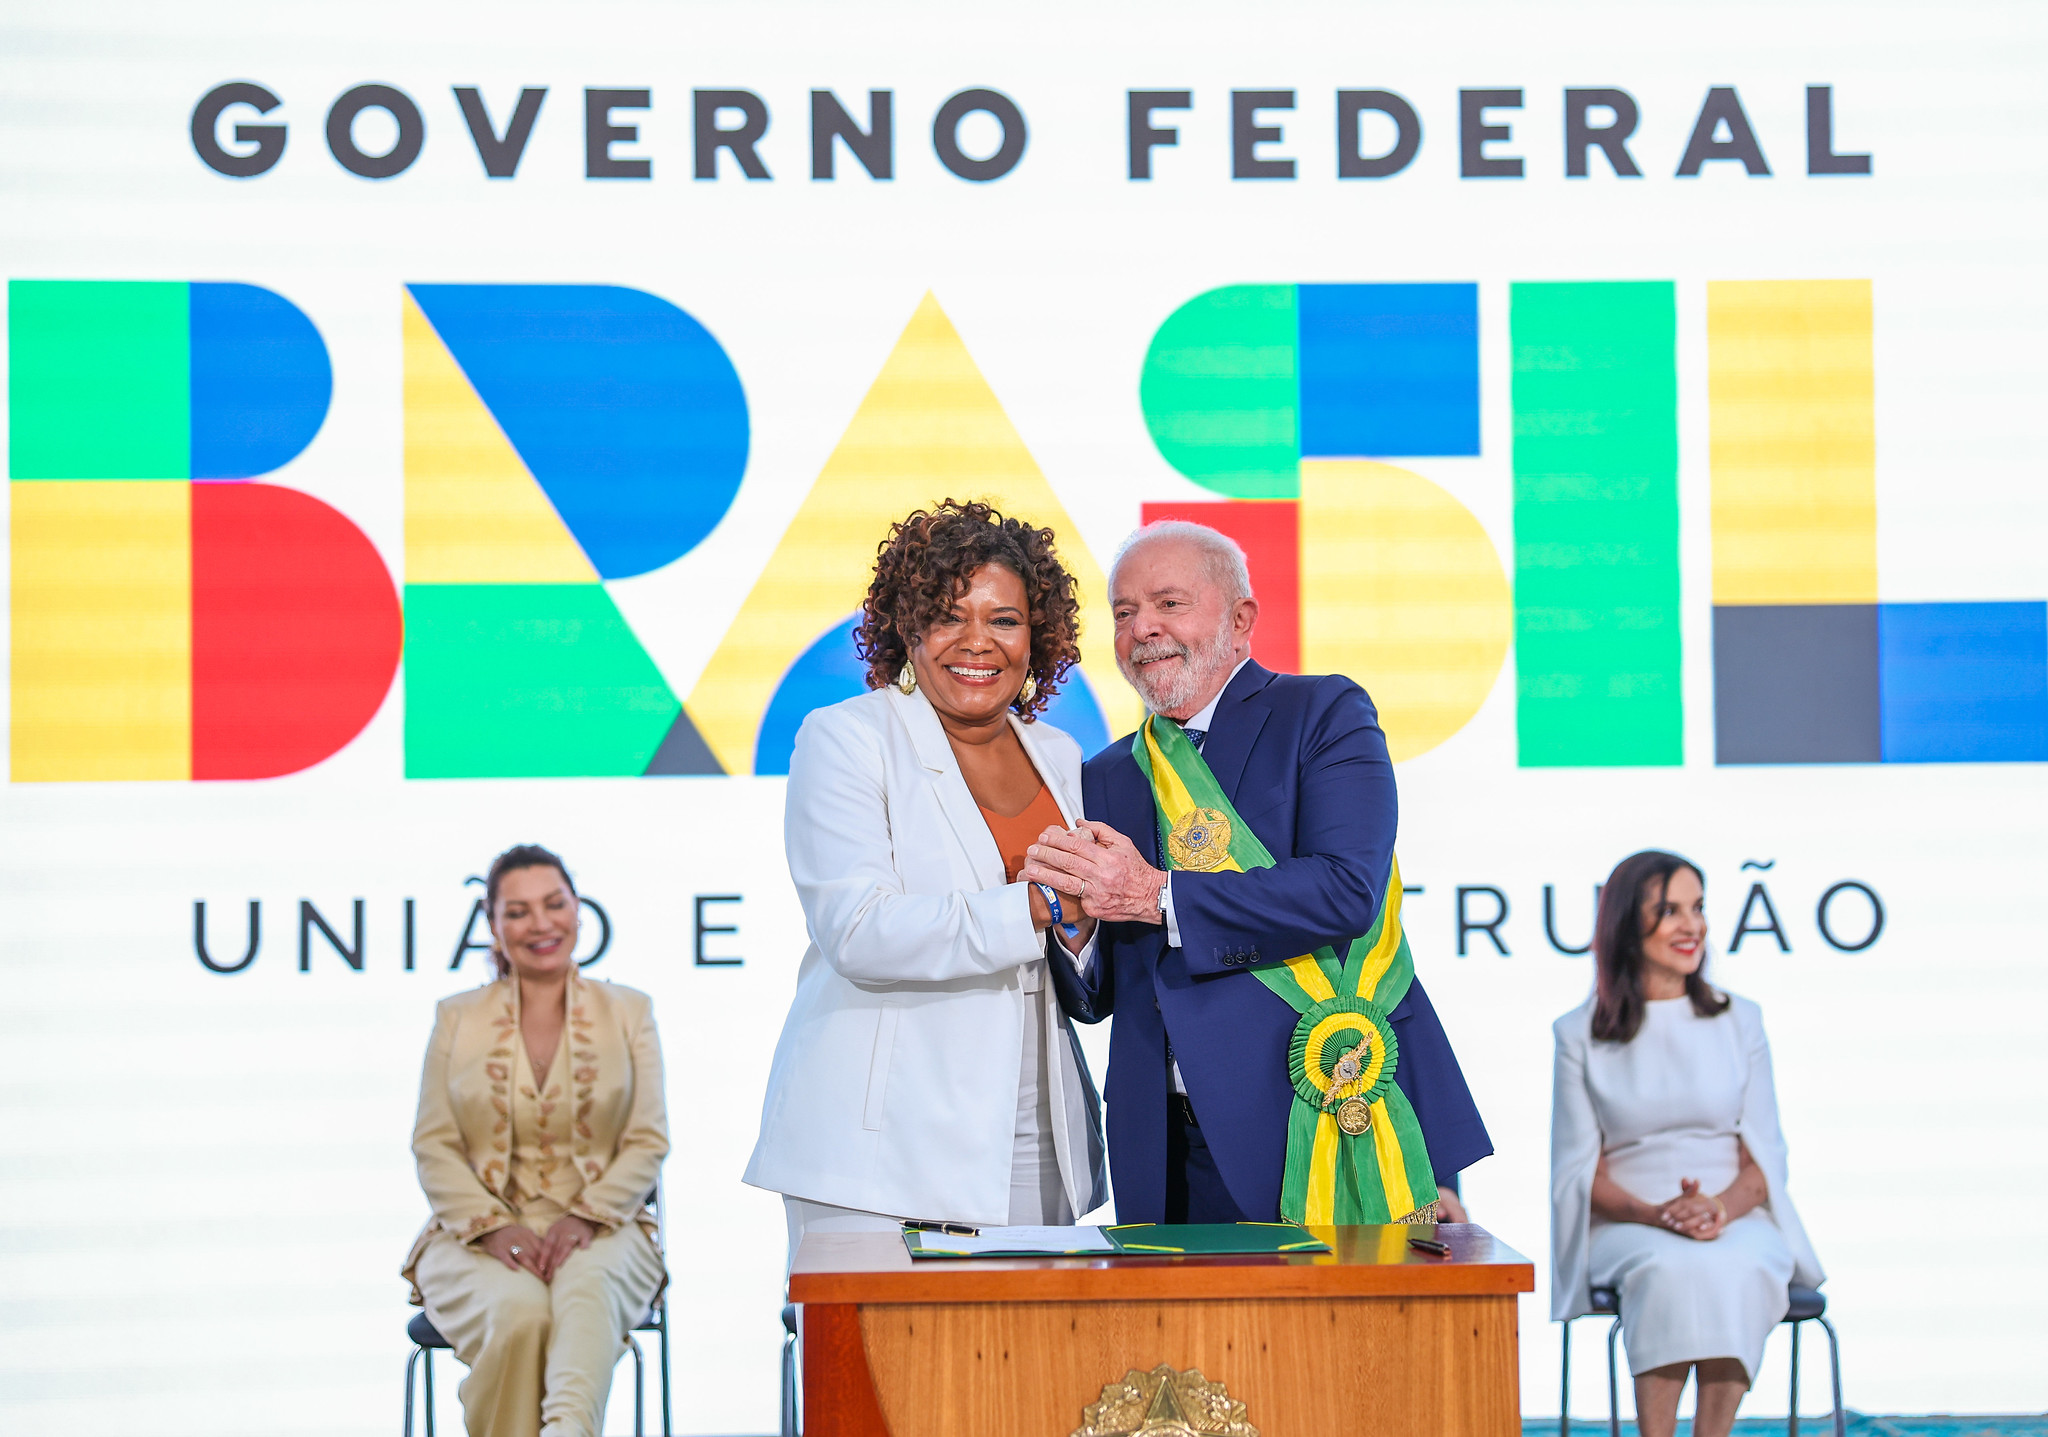 O presidente Luiz Inácio Lula da Silva (PT), ao lado da ministra da Cultura, Margareth Menezes (Foto: Ricardo Stuckert/PR)